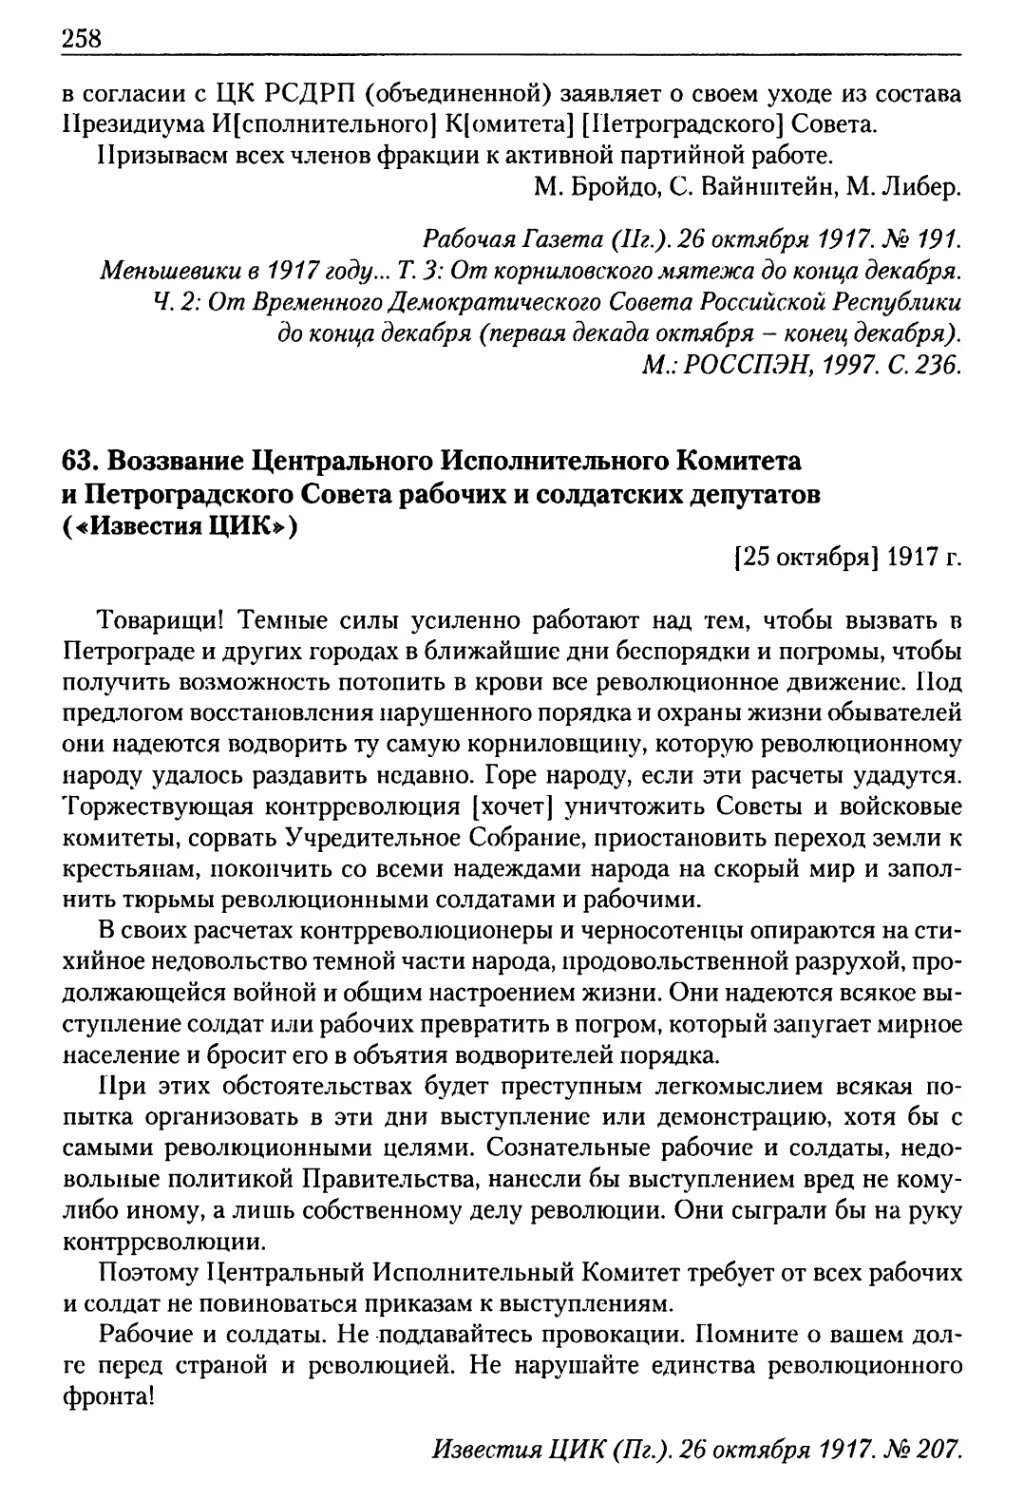 63. Воззвание Центрального Исполнительного Комитета и Петроградского Совета рабочих и солдатских депутатов